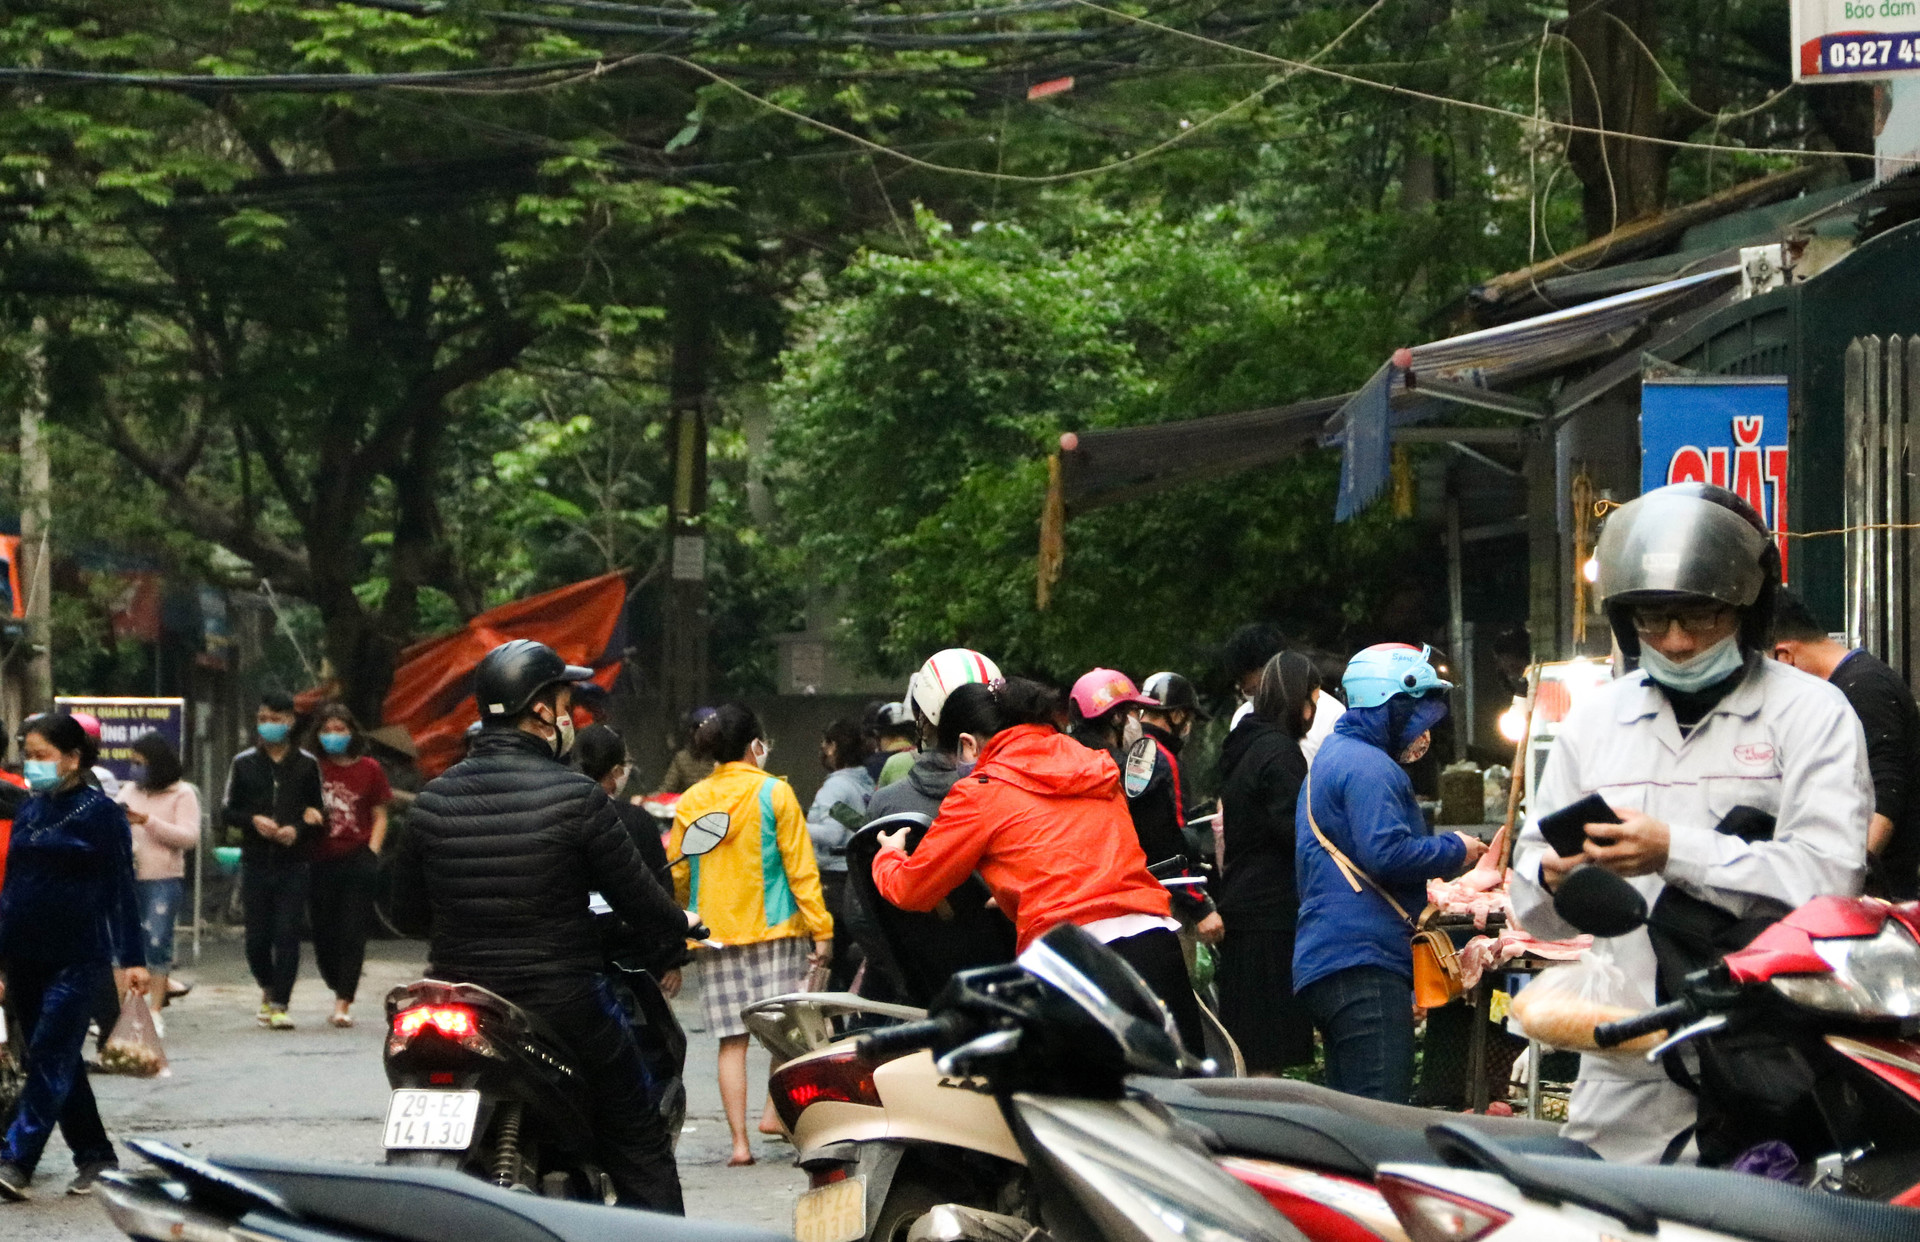 Chùm ảnh: Các tụ điểm công cộng tại Hà Nội dần trở nên đông đúc sau một tuần thực hiện cách ly xã hội - Ảnh 4.